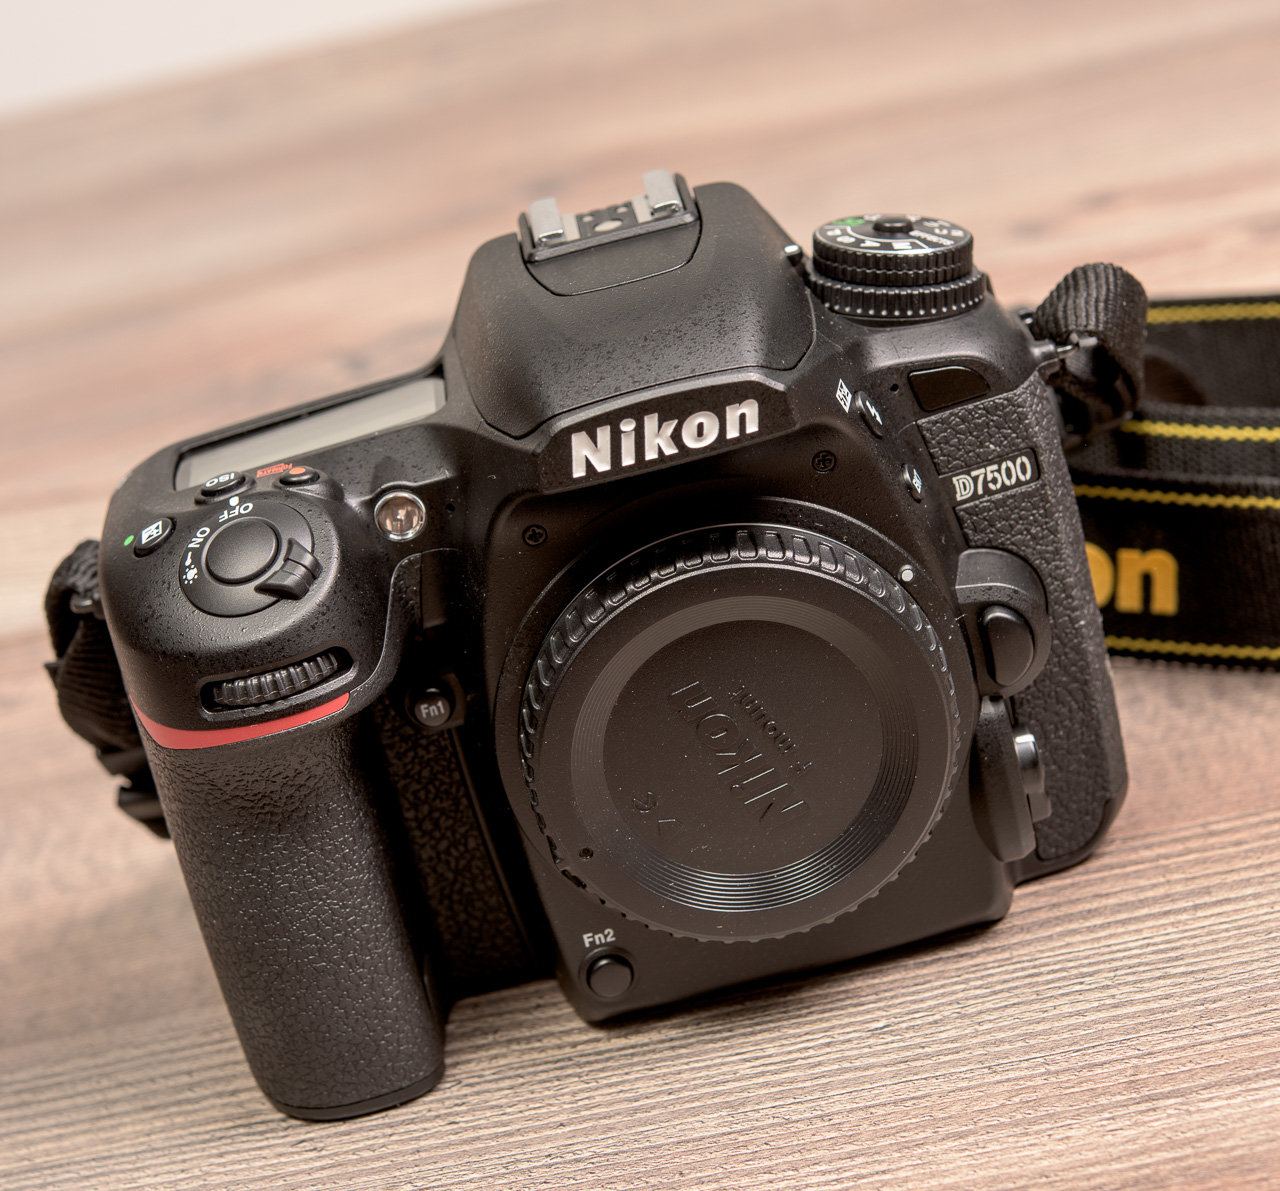 Maggiori informazioni su "Nikon D7500 : io non ho paura ! (test/prova)"